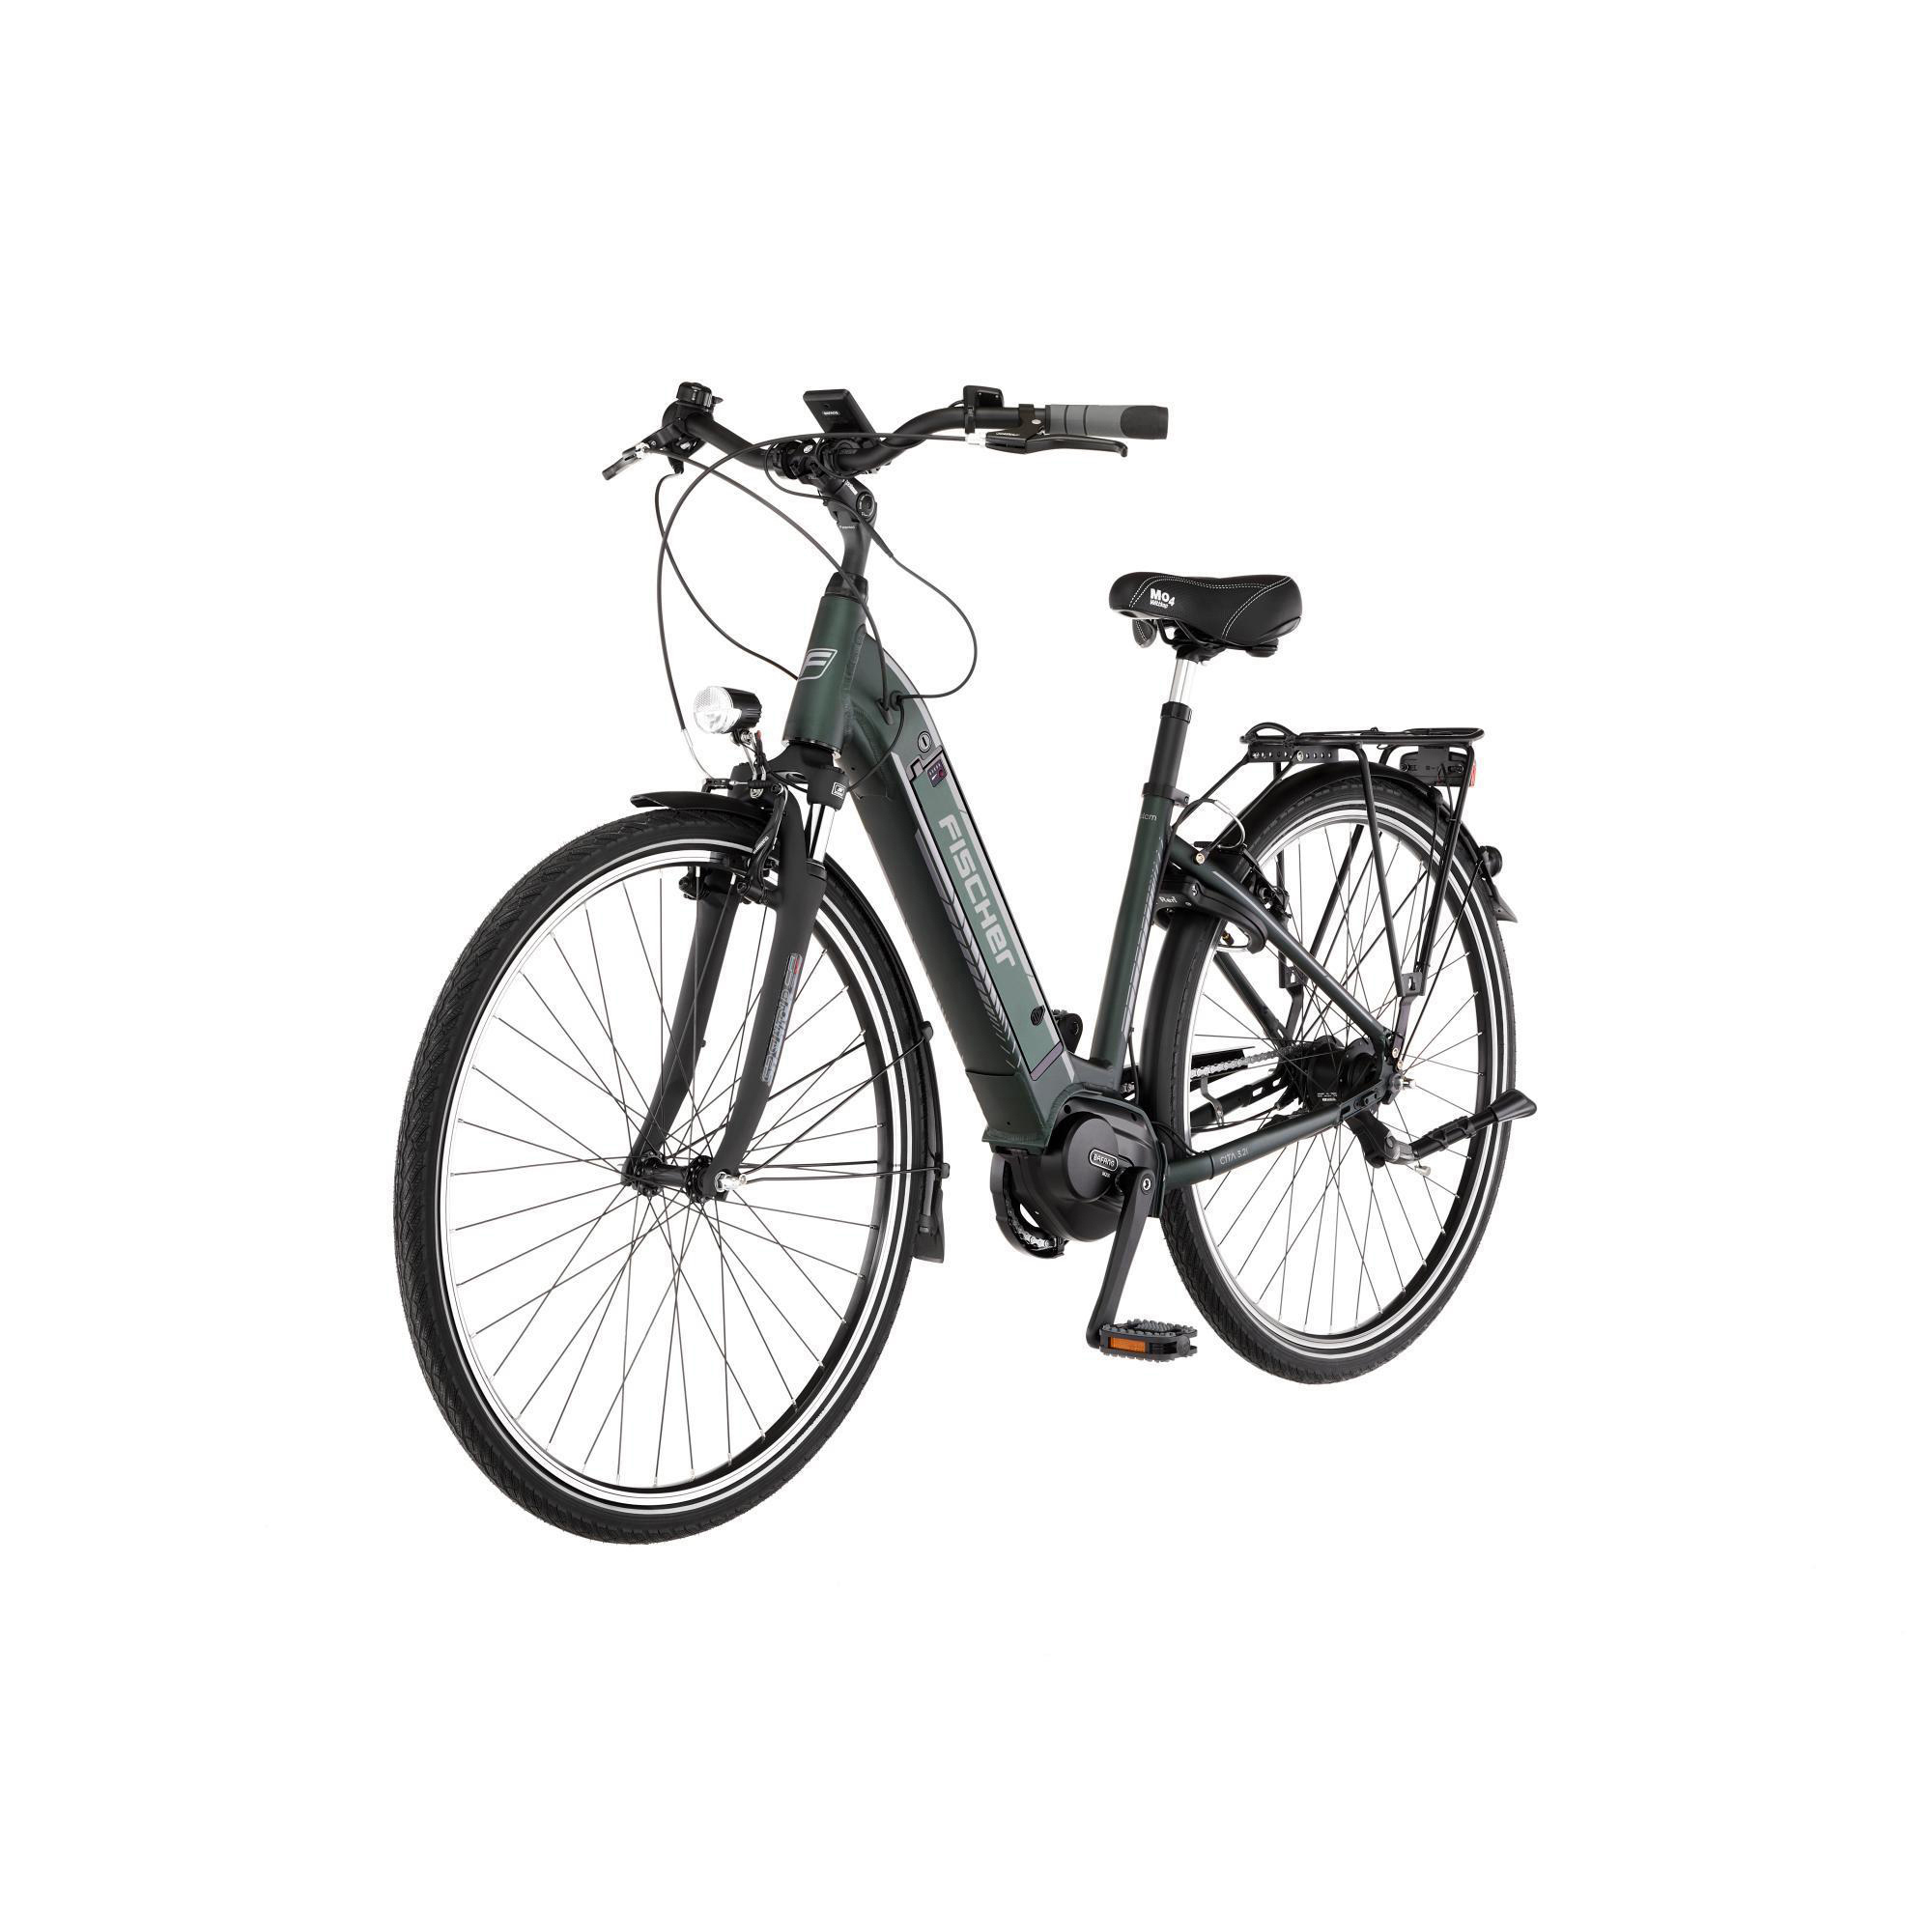 Damen-Rad, CITA Zoll, 3.2i (Laufradgröße: matt) 418 Wh, FISCHER Citybike 28 grün